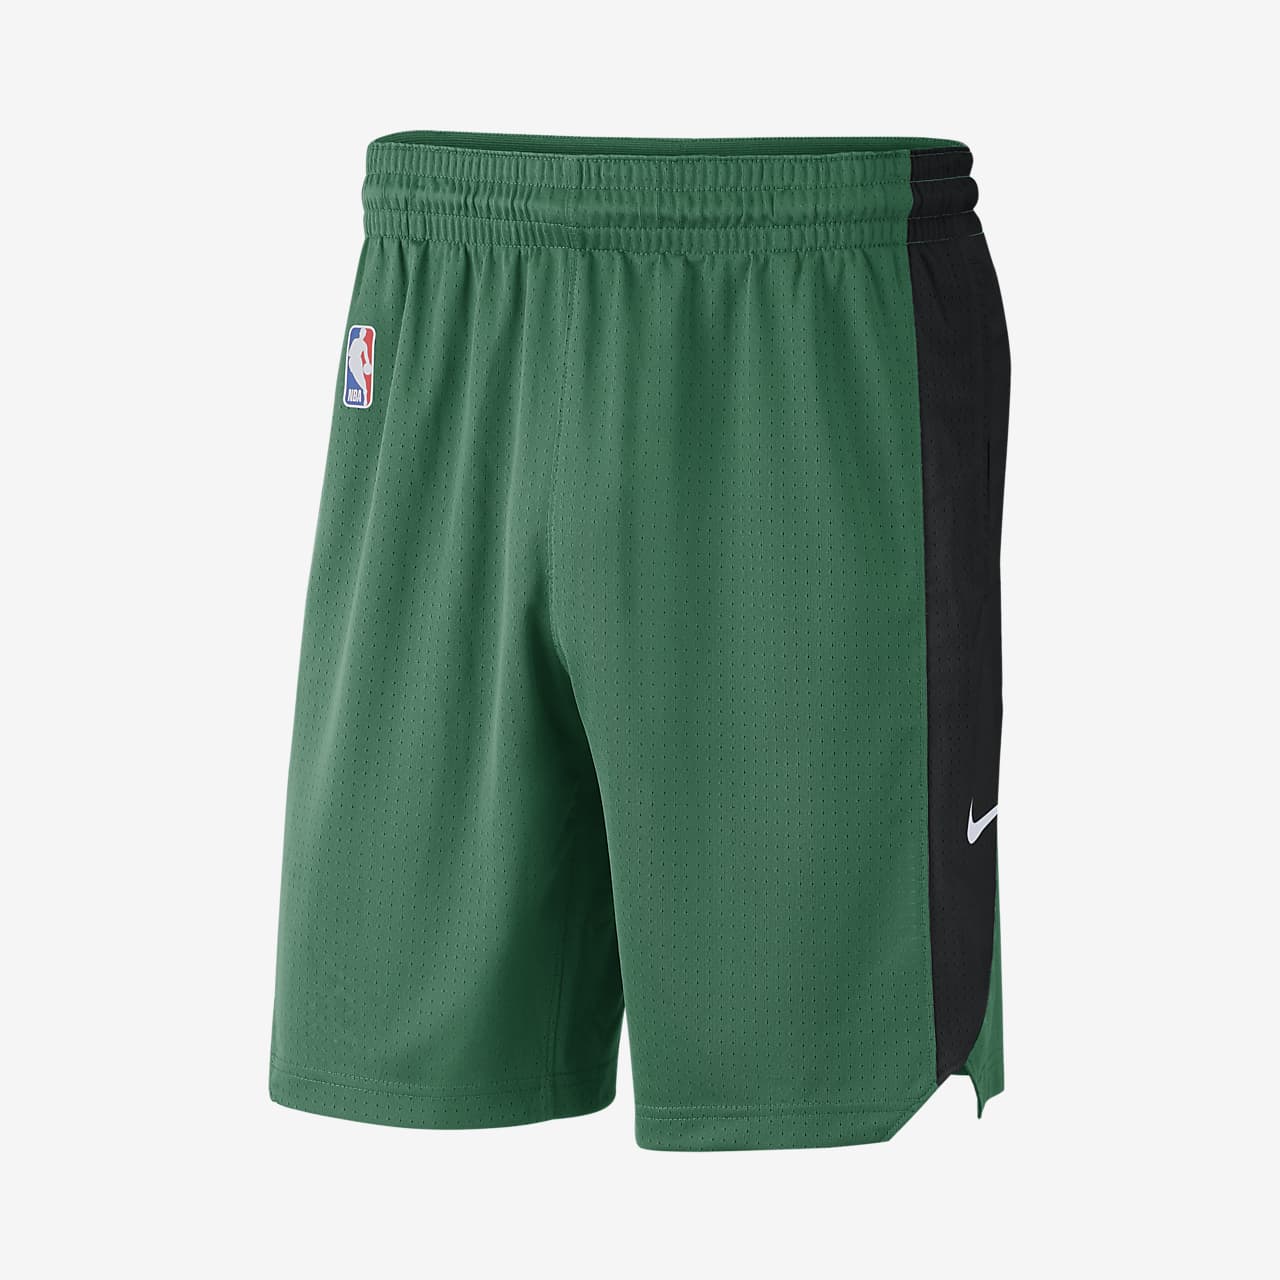 Celtics Shorts : Nike Men S Boston Celtics Nba Shorts Olympia Sports ...